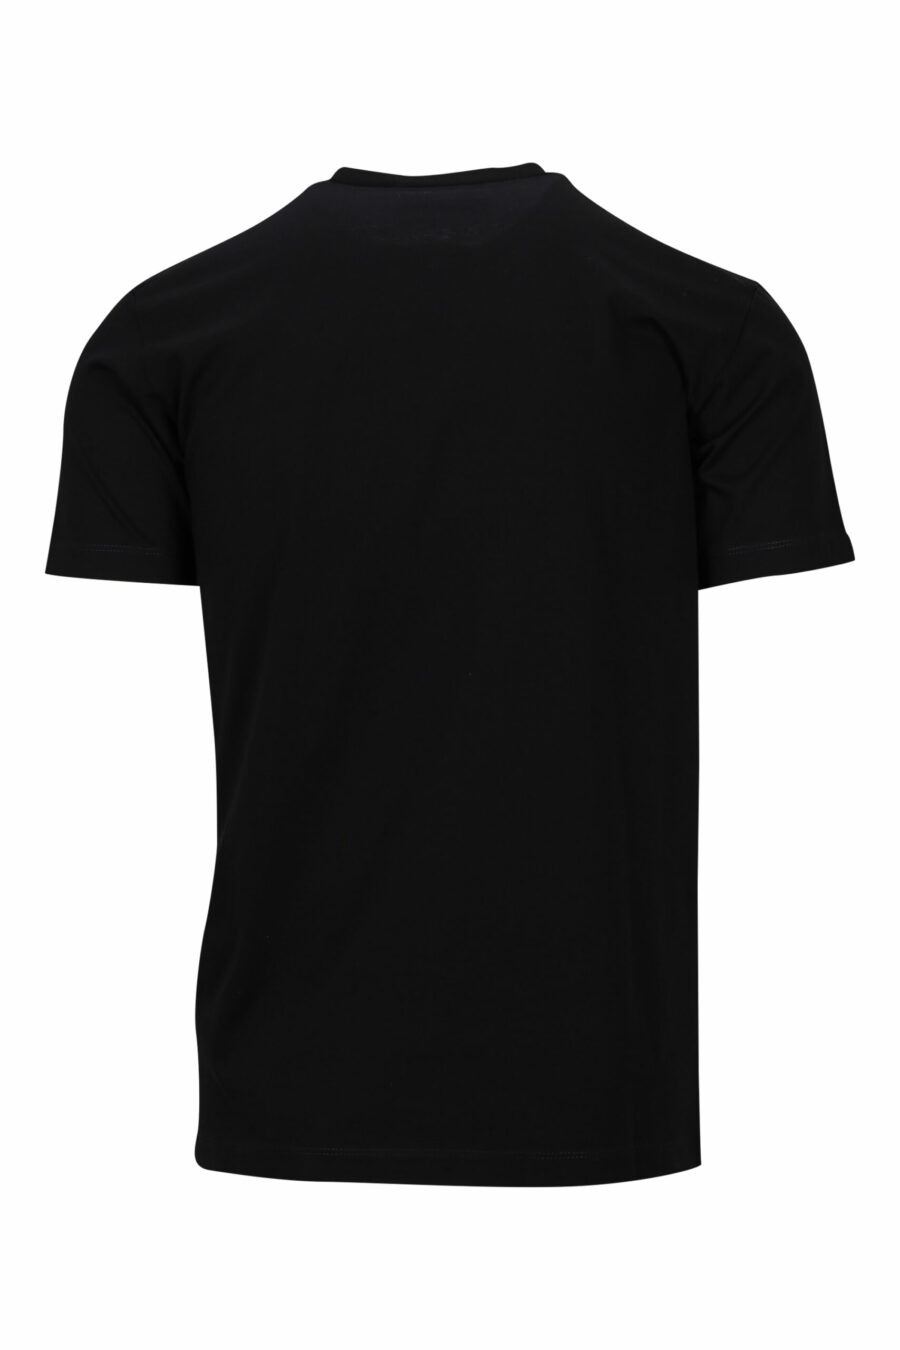 T-shirt noir avec logo sur plaque - 8054148370800